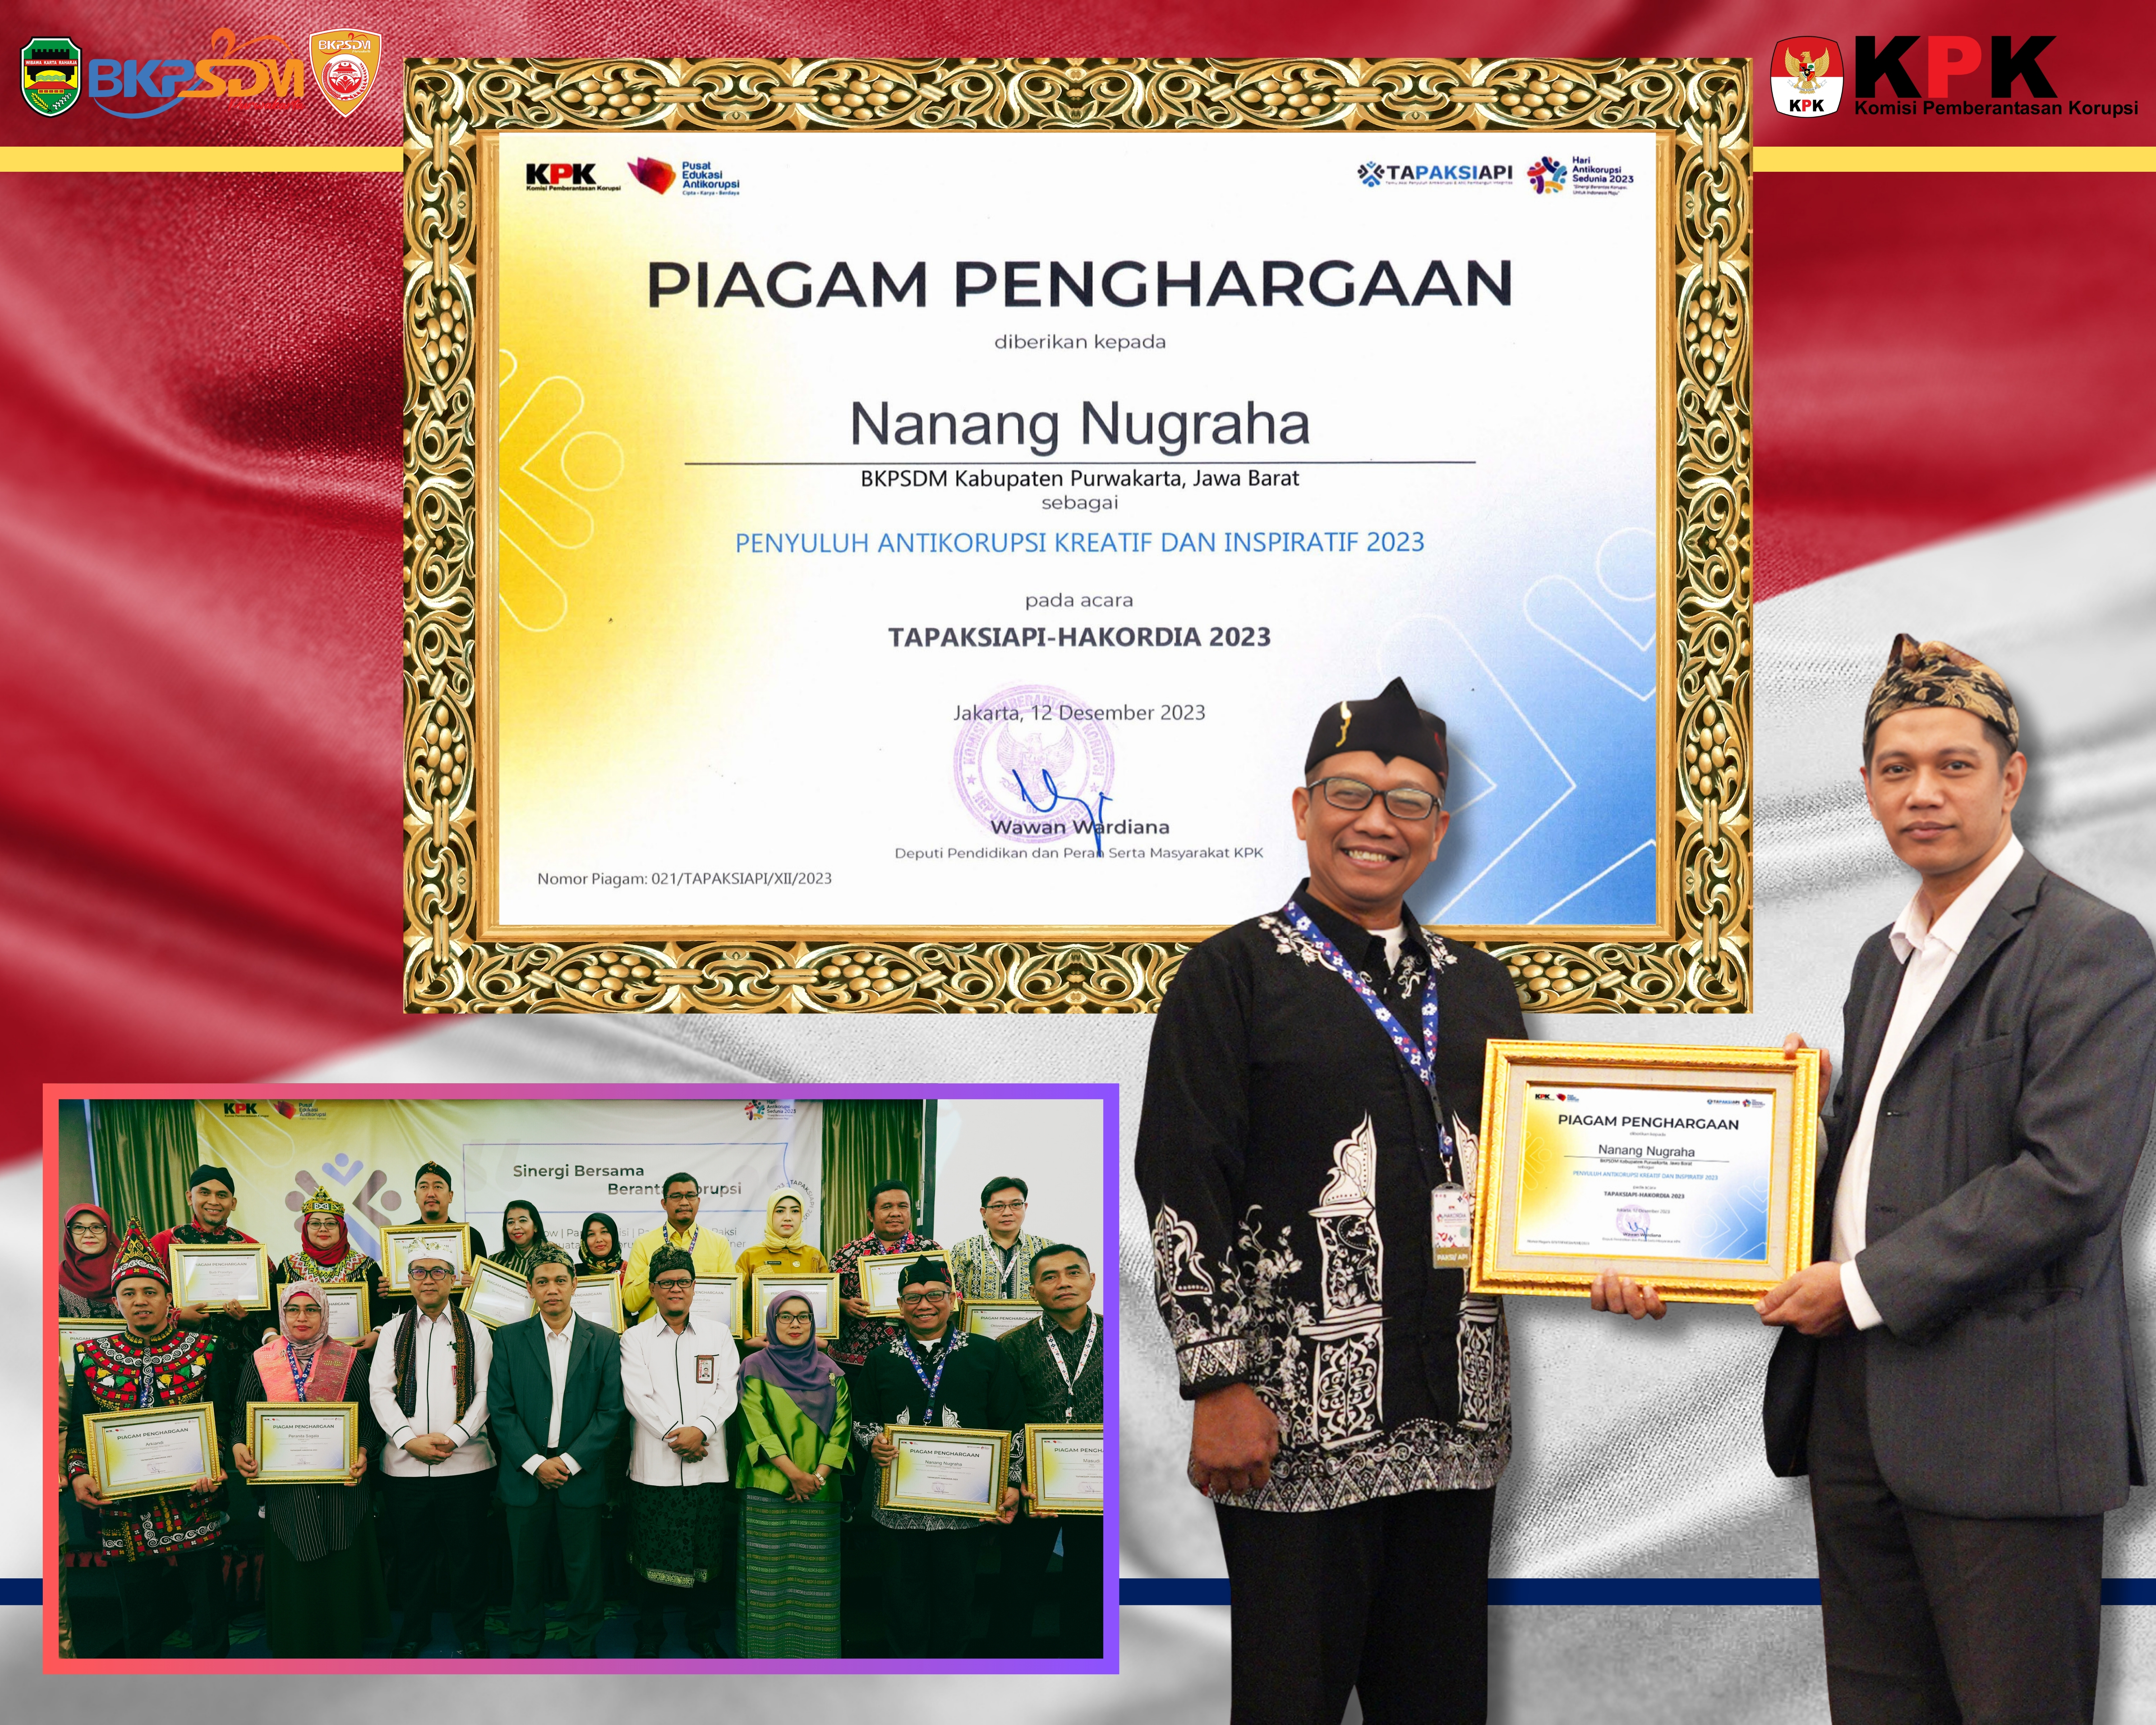 Nanang Nugraha Menerima Penghargaan Penyuluh Antikorupsi Kreatif & Inspiratif 2023 Dari K P K